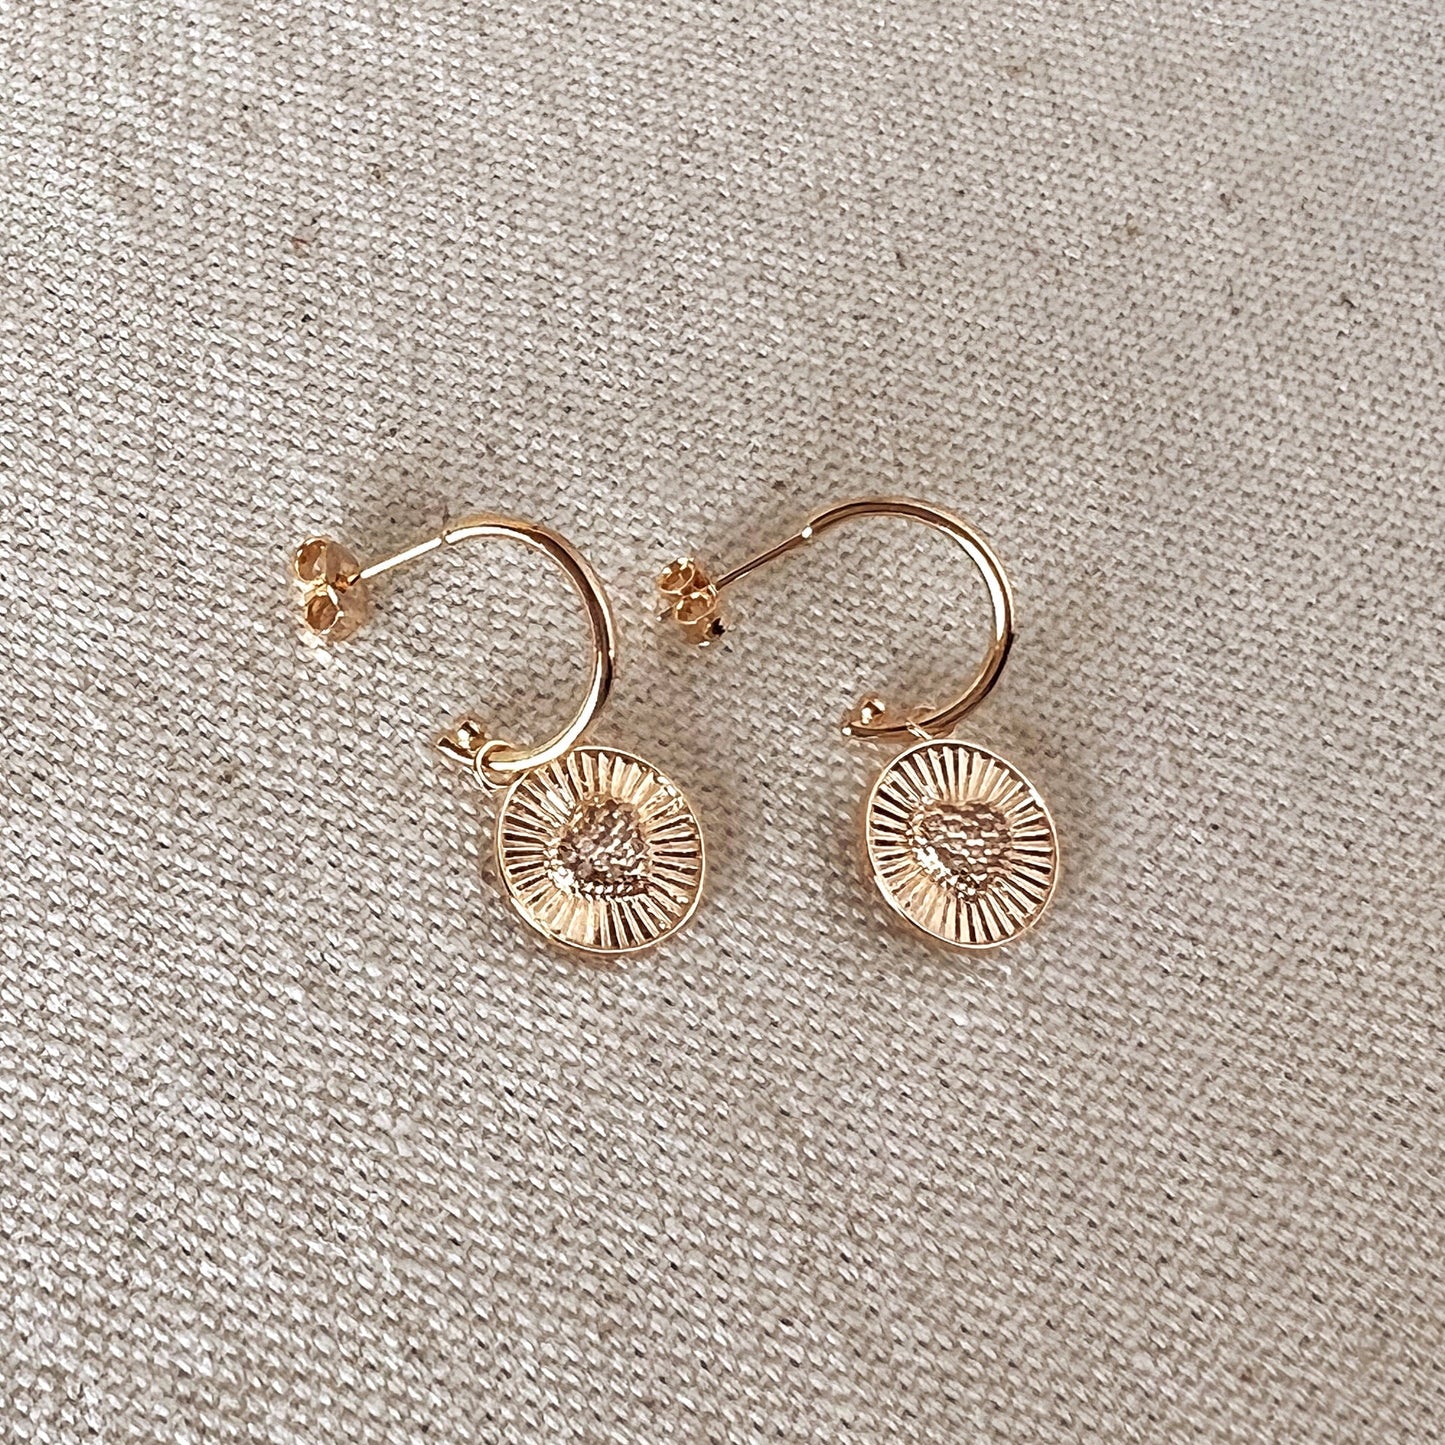 GoldFi 18k Gold Filled Spoke Texture Heart Charm Cubic Zirconia Earrings